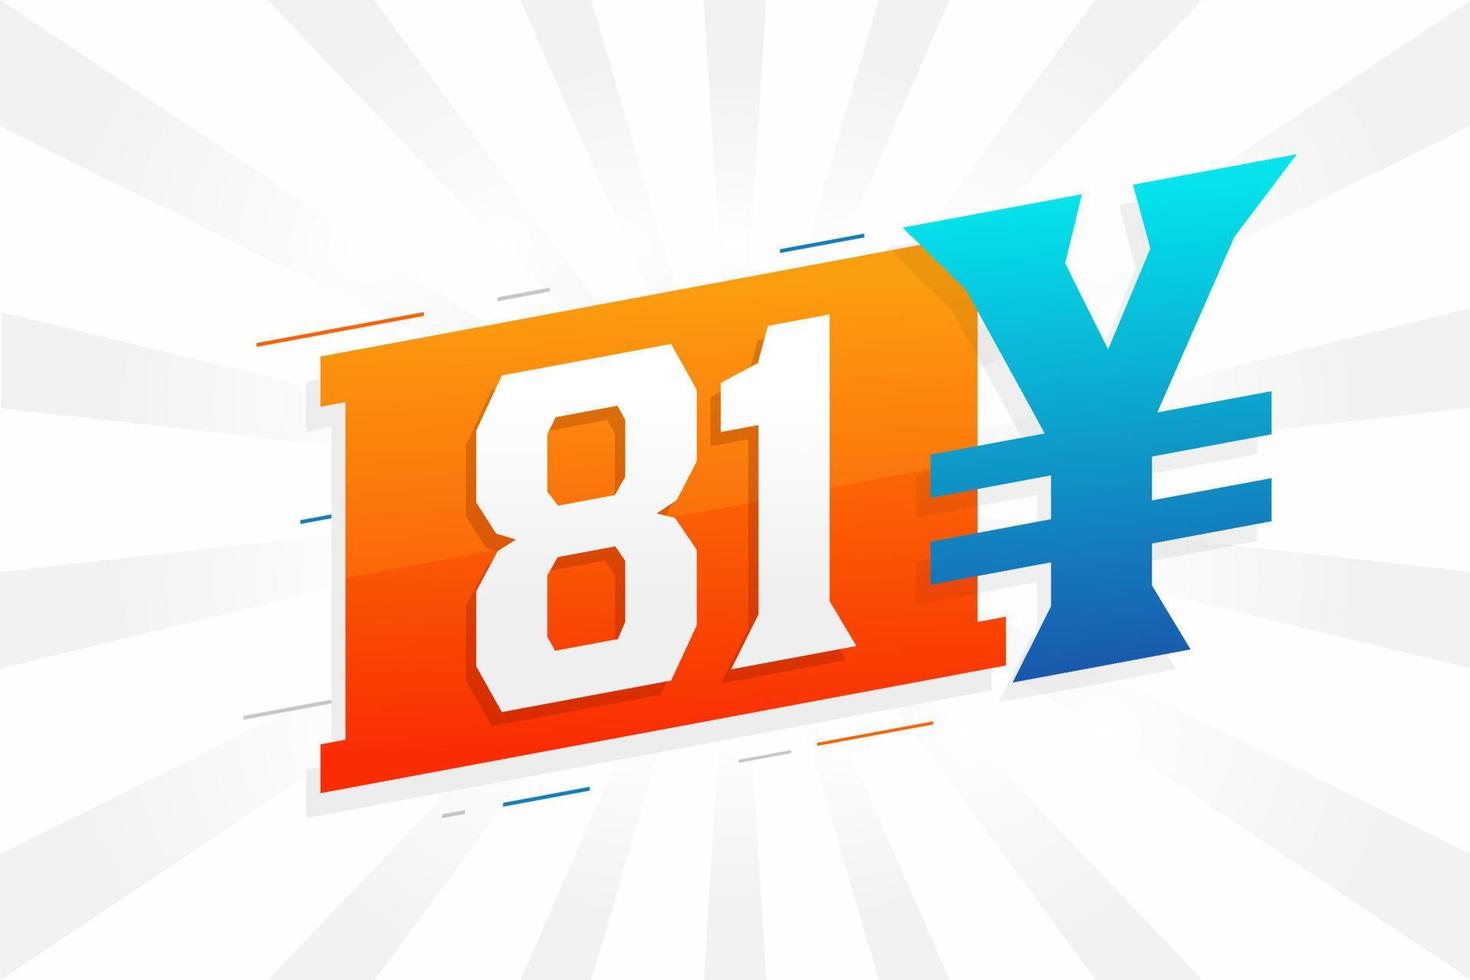 Símbolo de texto de vetor de moeda chinesa de 81 yuan. Vetor de estoque de dinheiro de moeda japonesa de 81 ienes